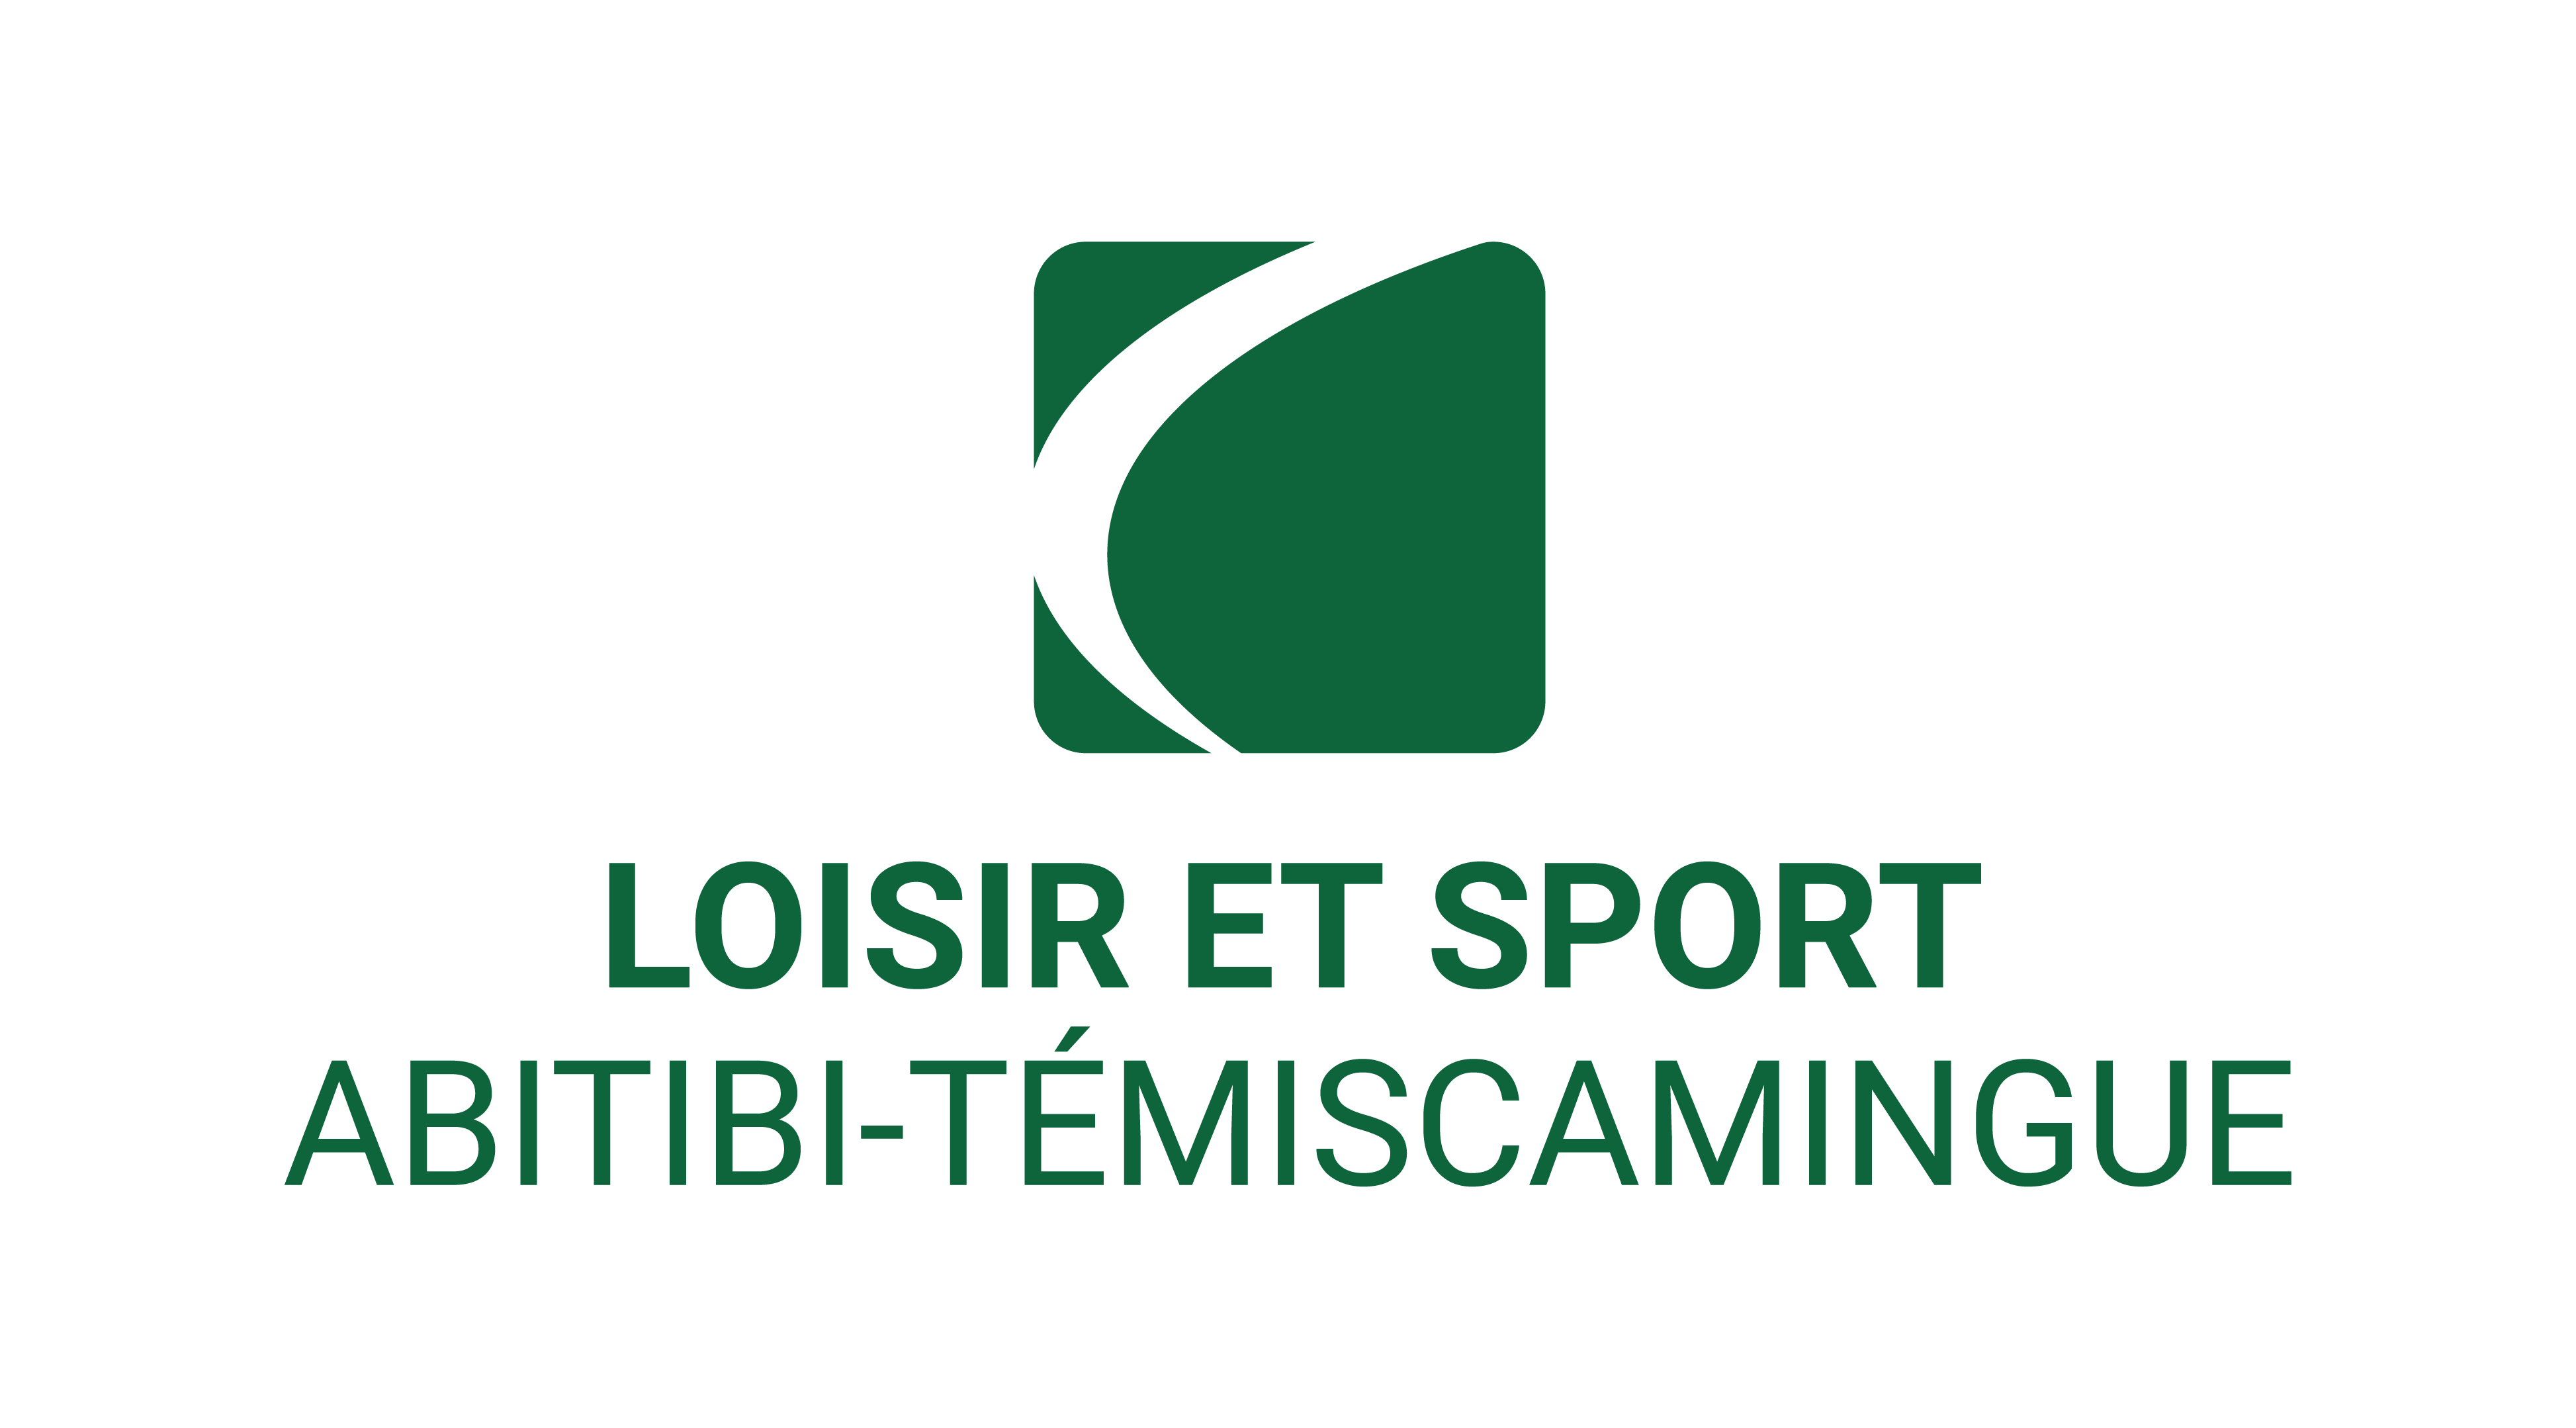 Loisier et sport Abitibi-témiscamingue